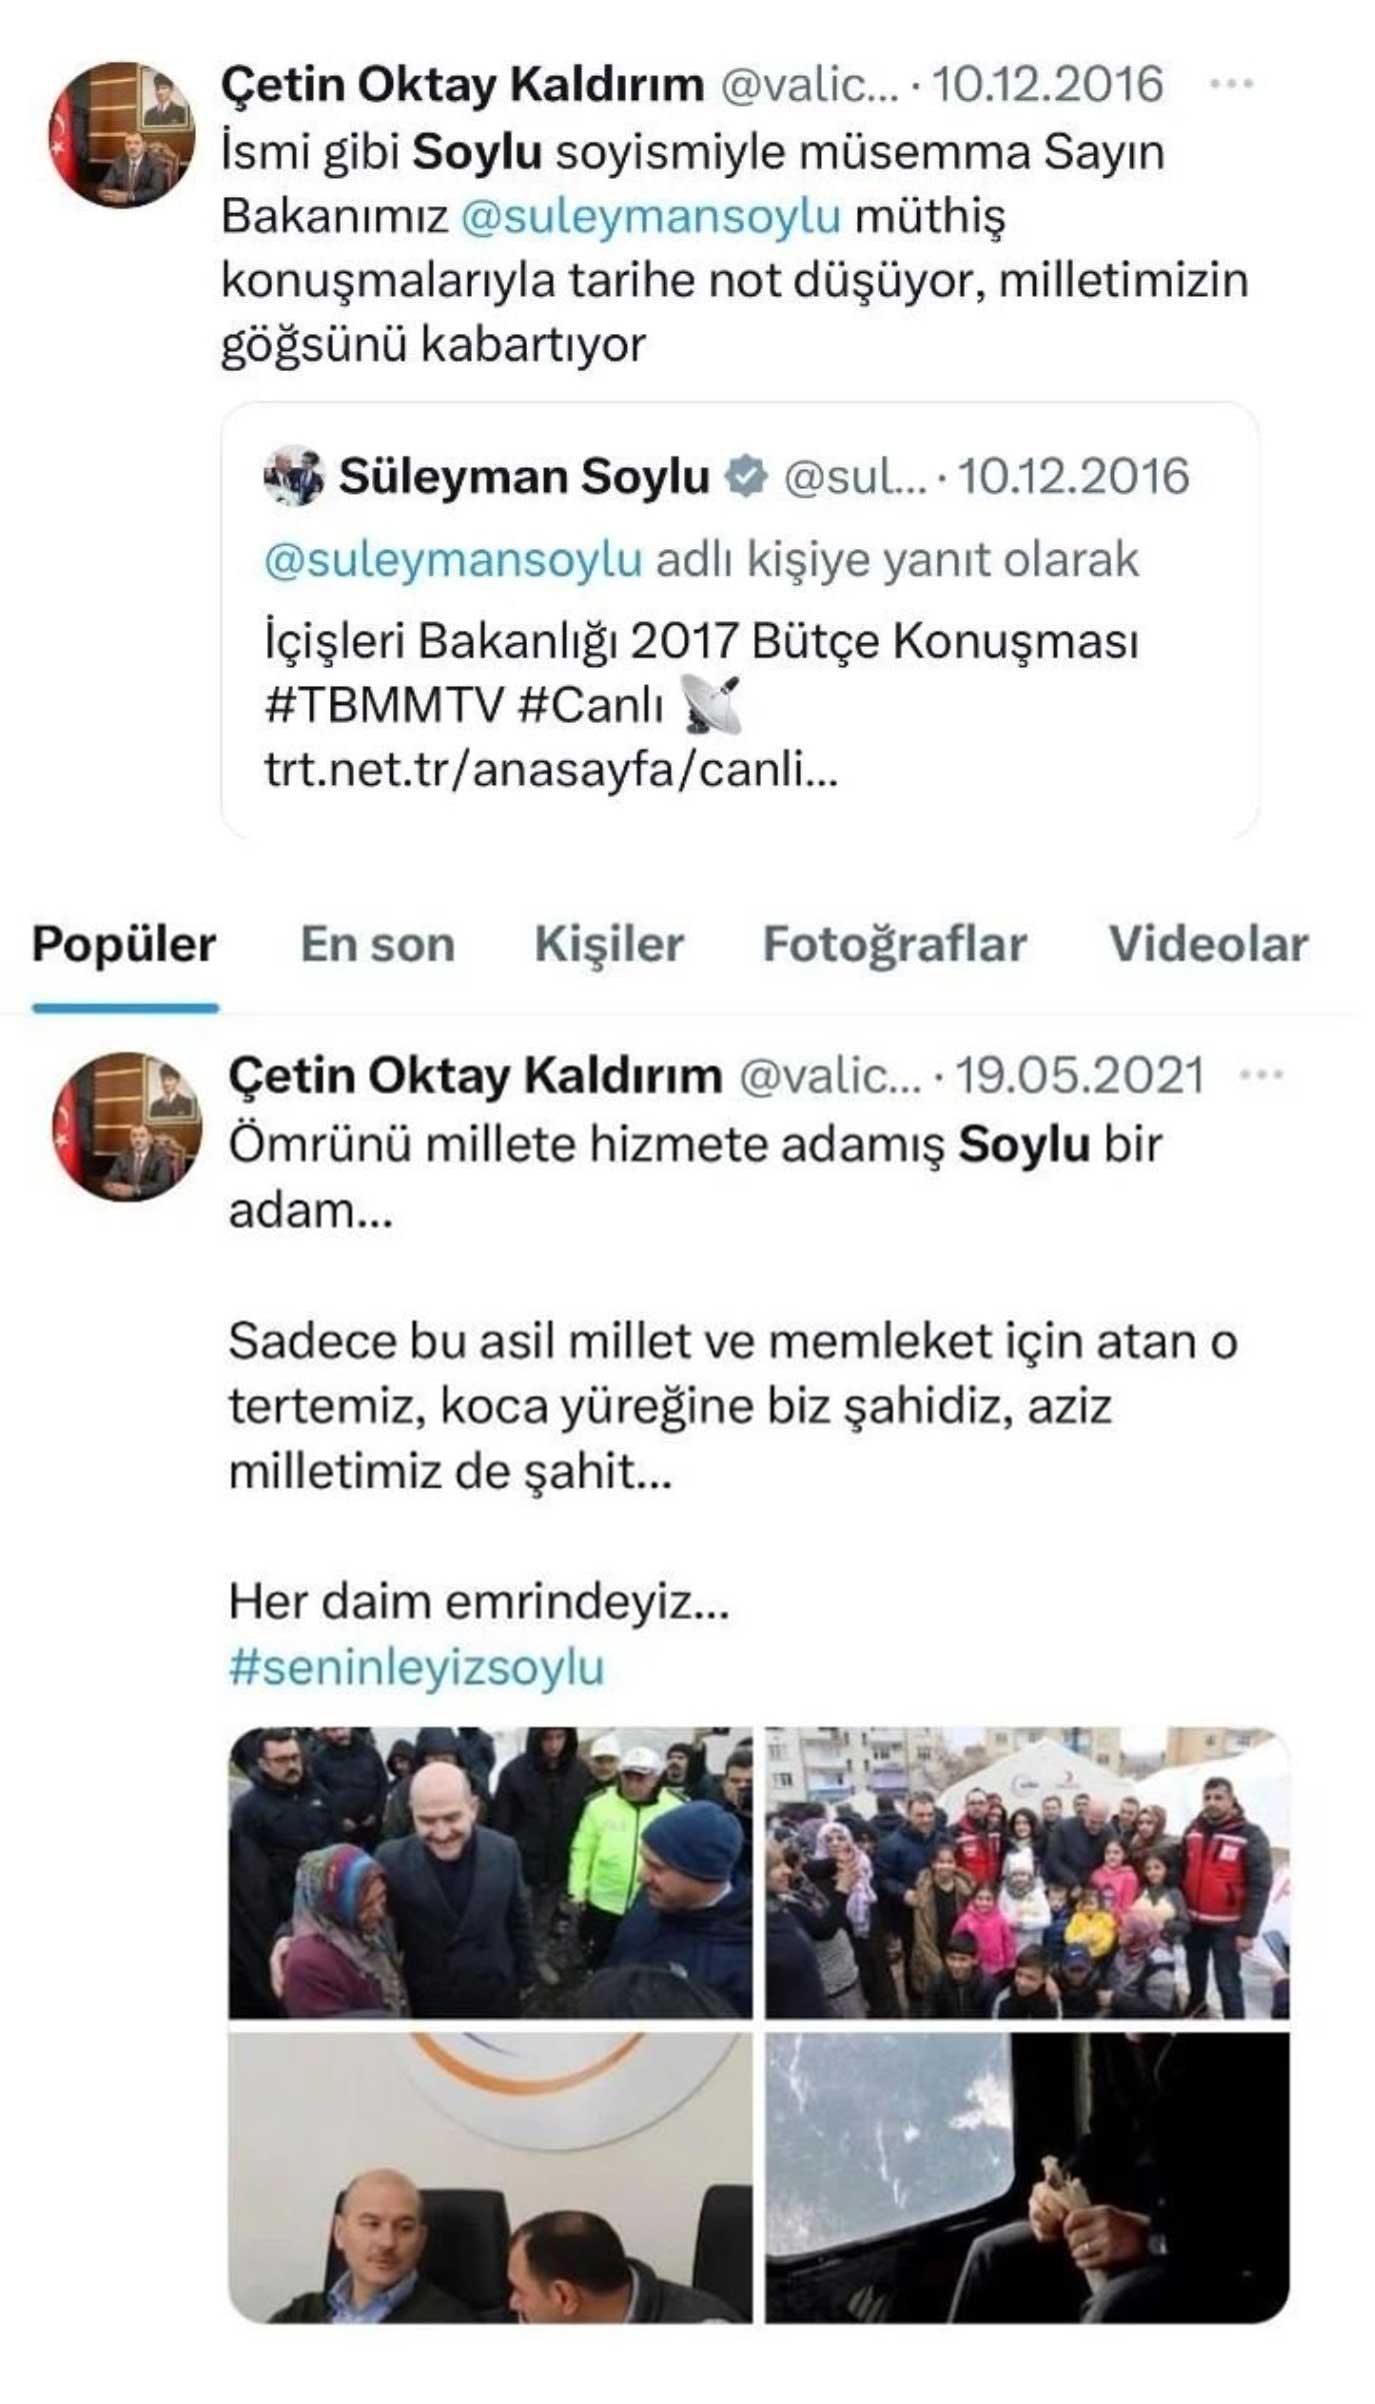 Süleyman Soylu'nun Erdoğan'dan son isteği ortaya çıktı